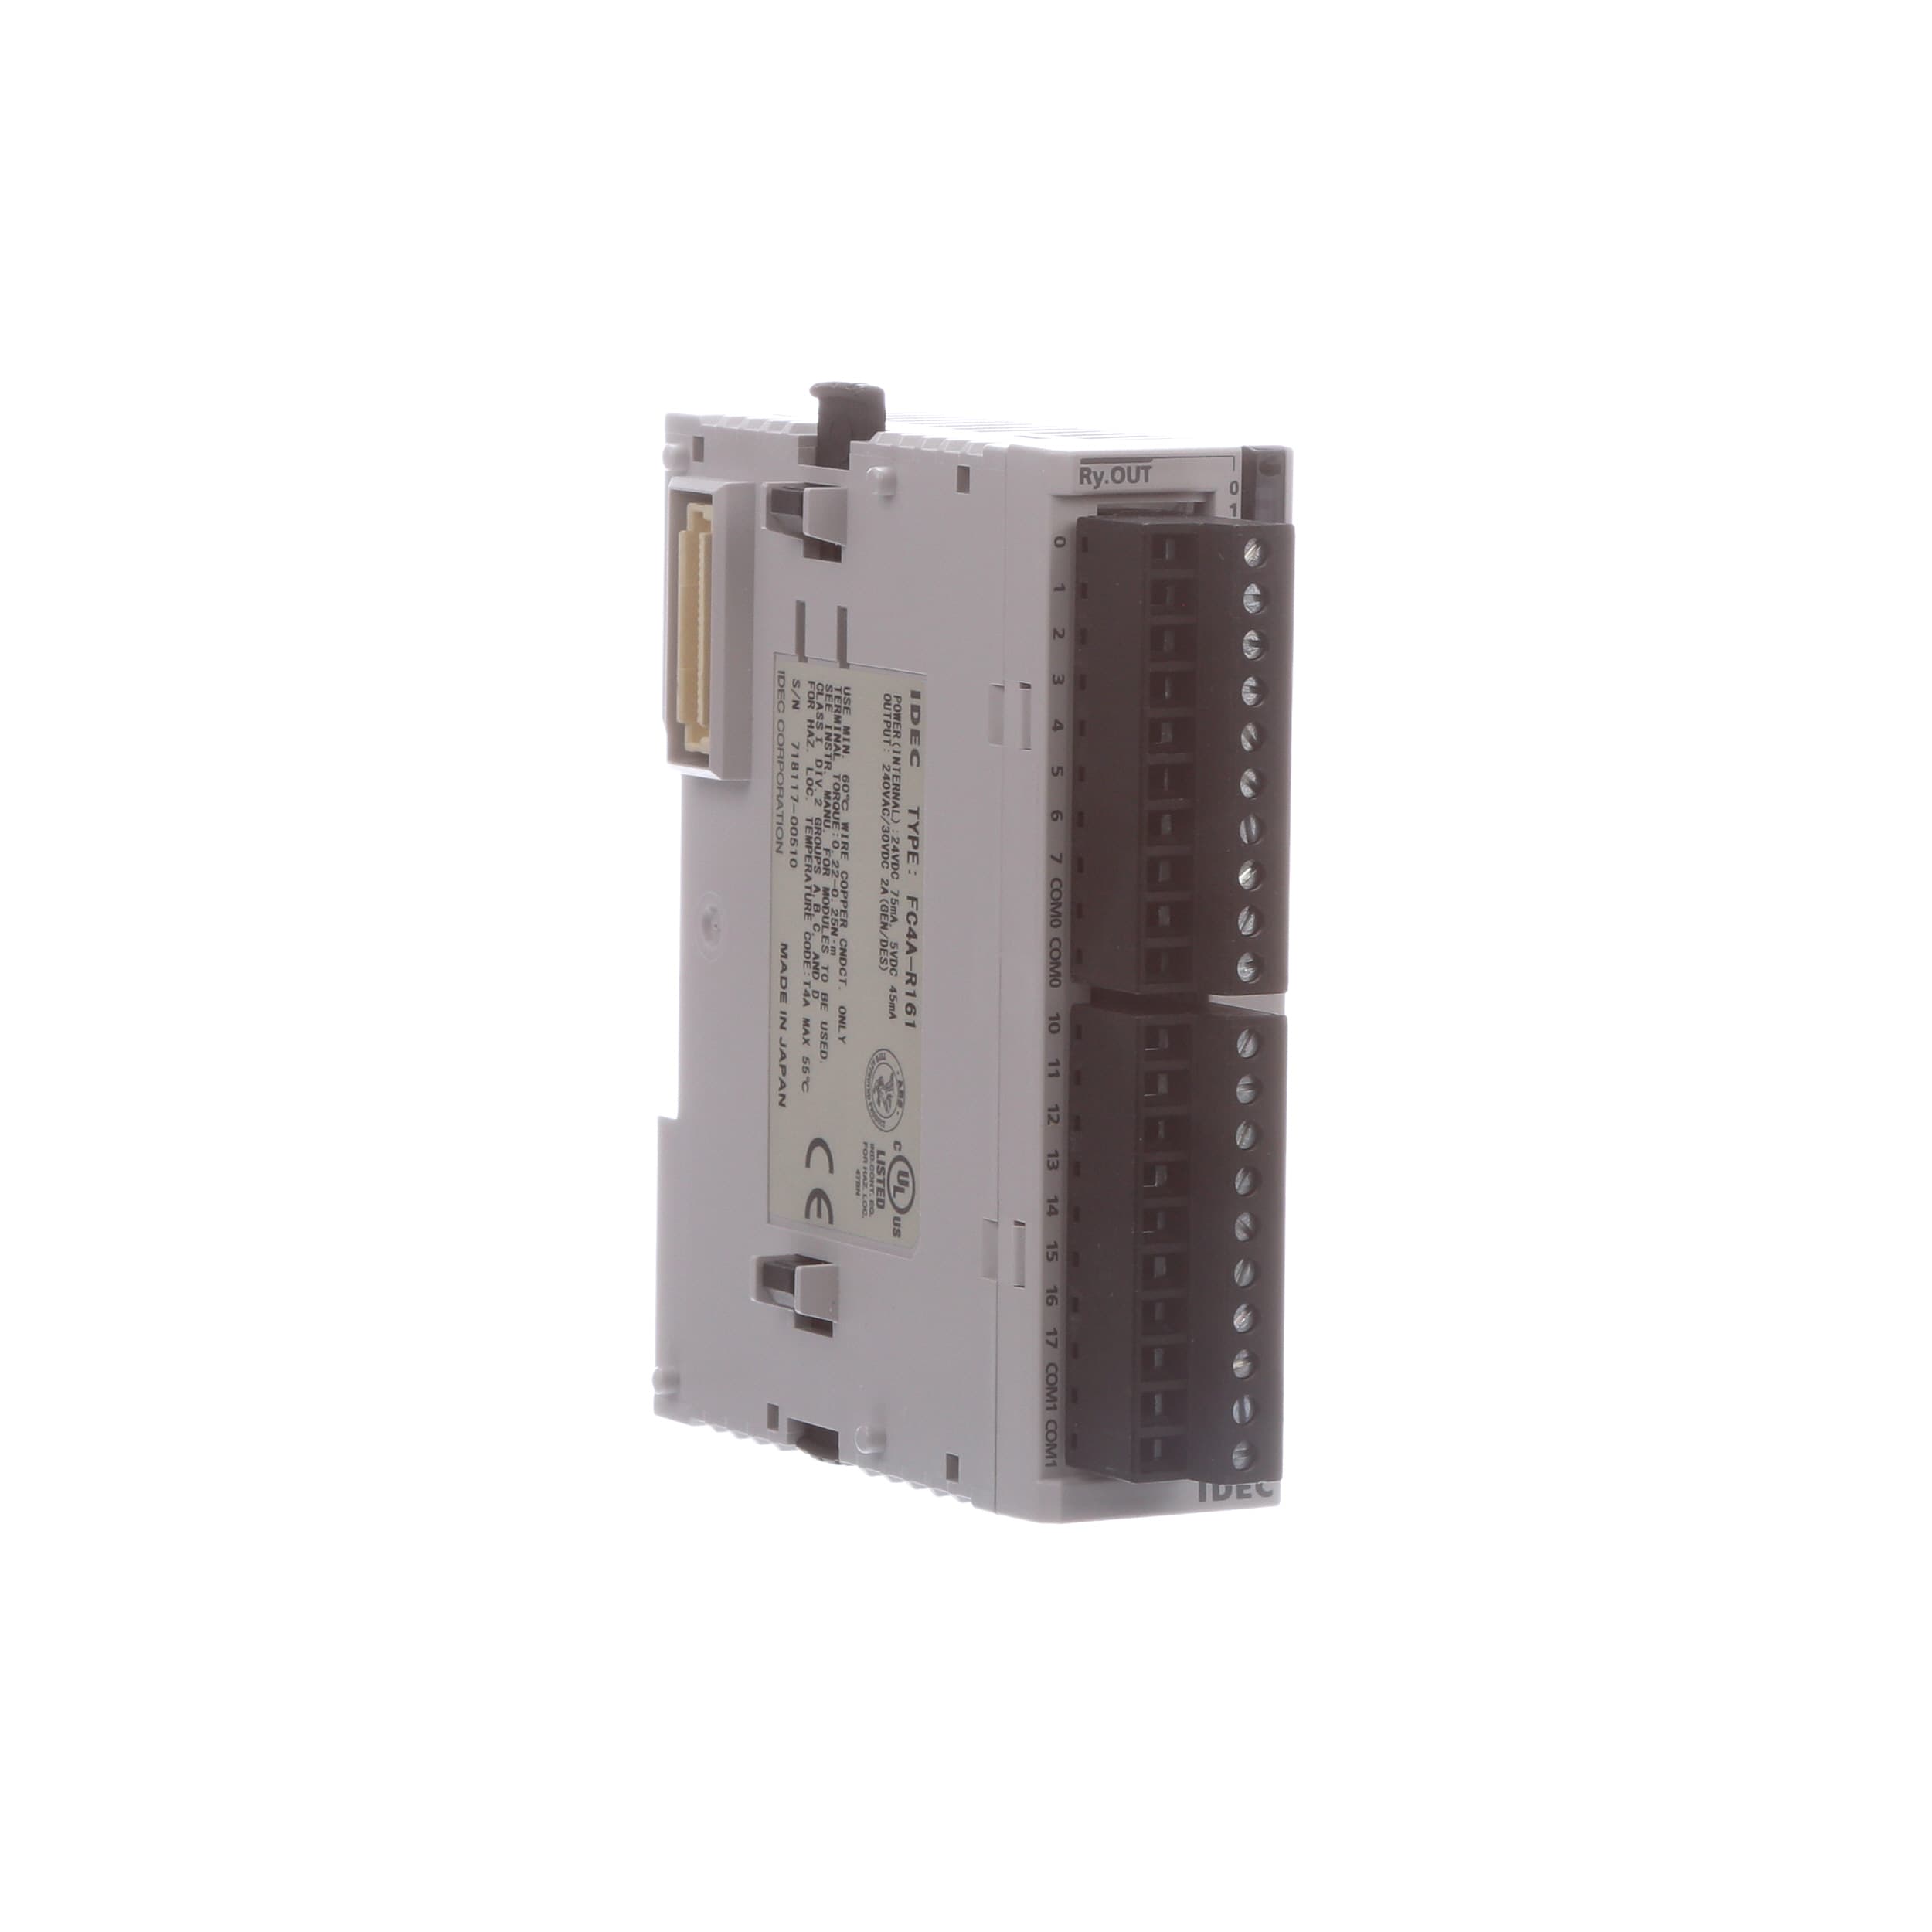 Details about   1 PCS IDEC PLC output module FC4A-N16B1 in good condition 